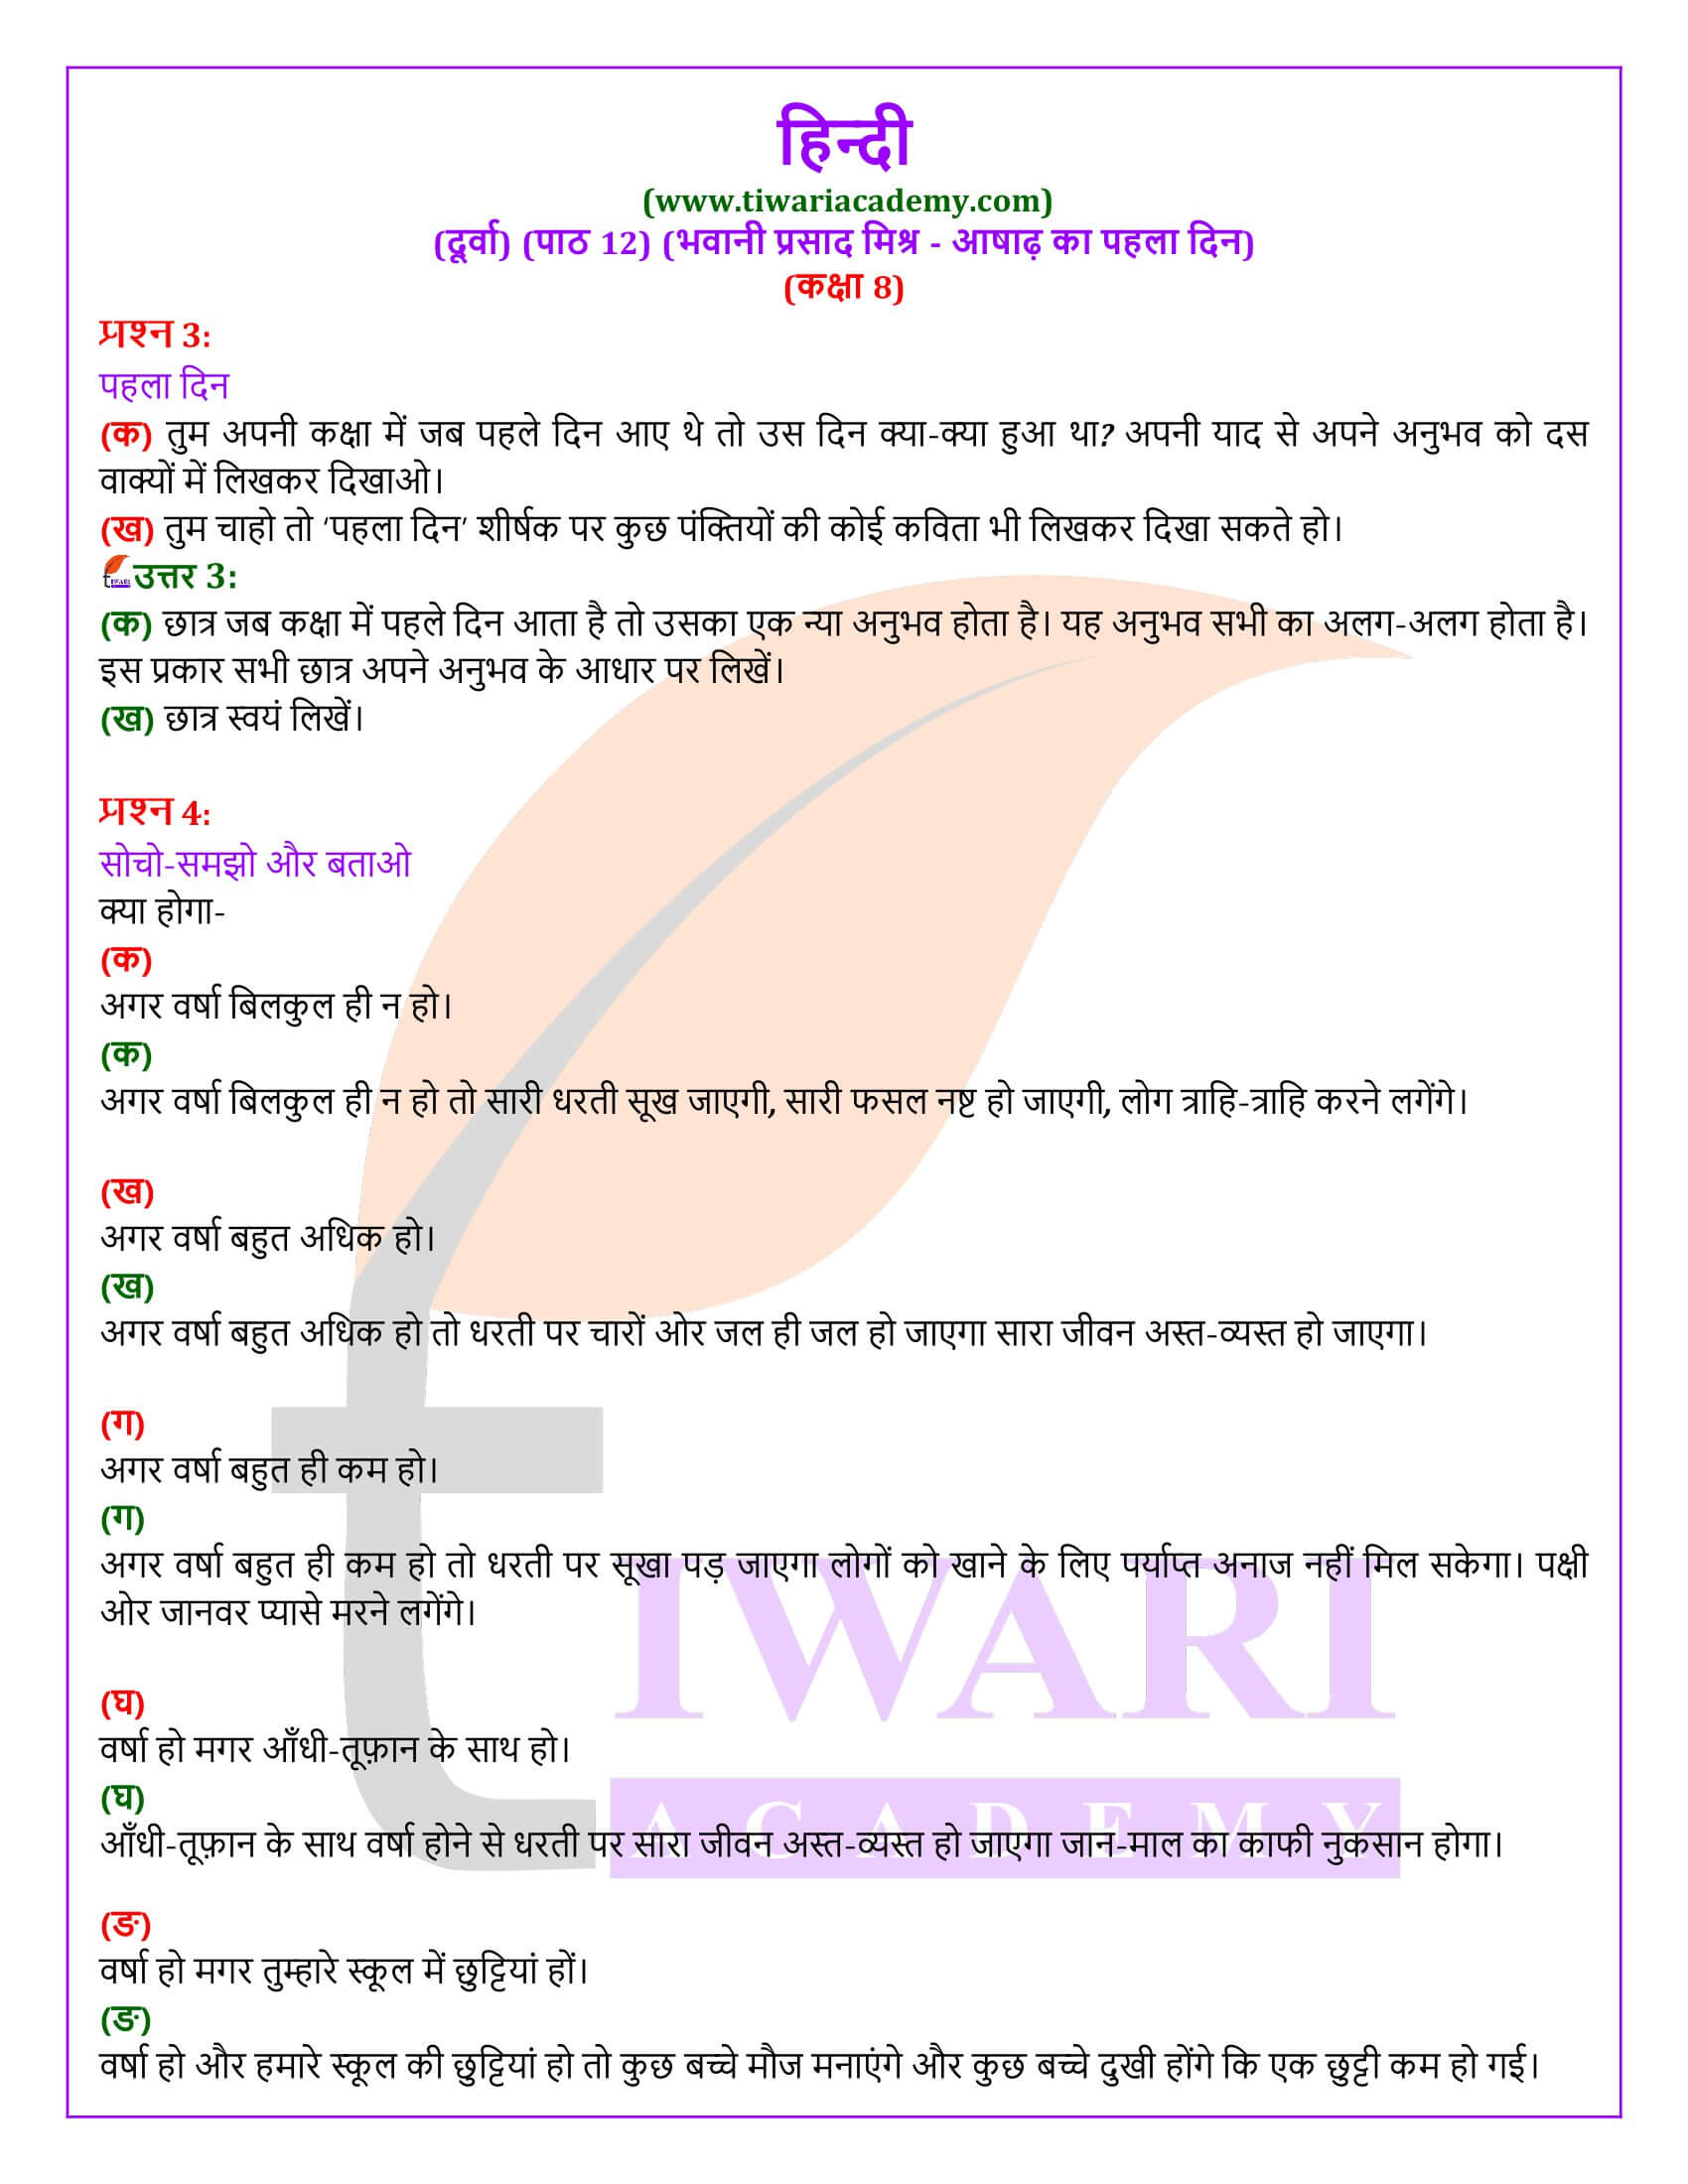 कक्षा 8 हिंदी दूर्वा अध्याय 12 आषाढ़ का पहला दिन